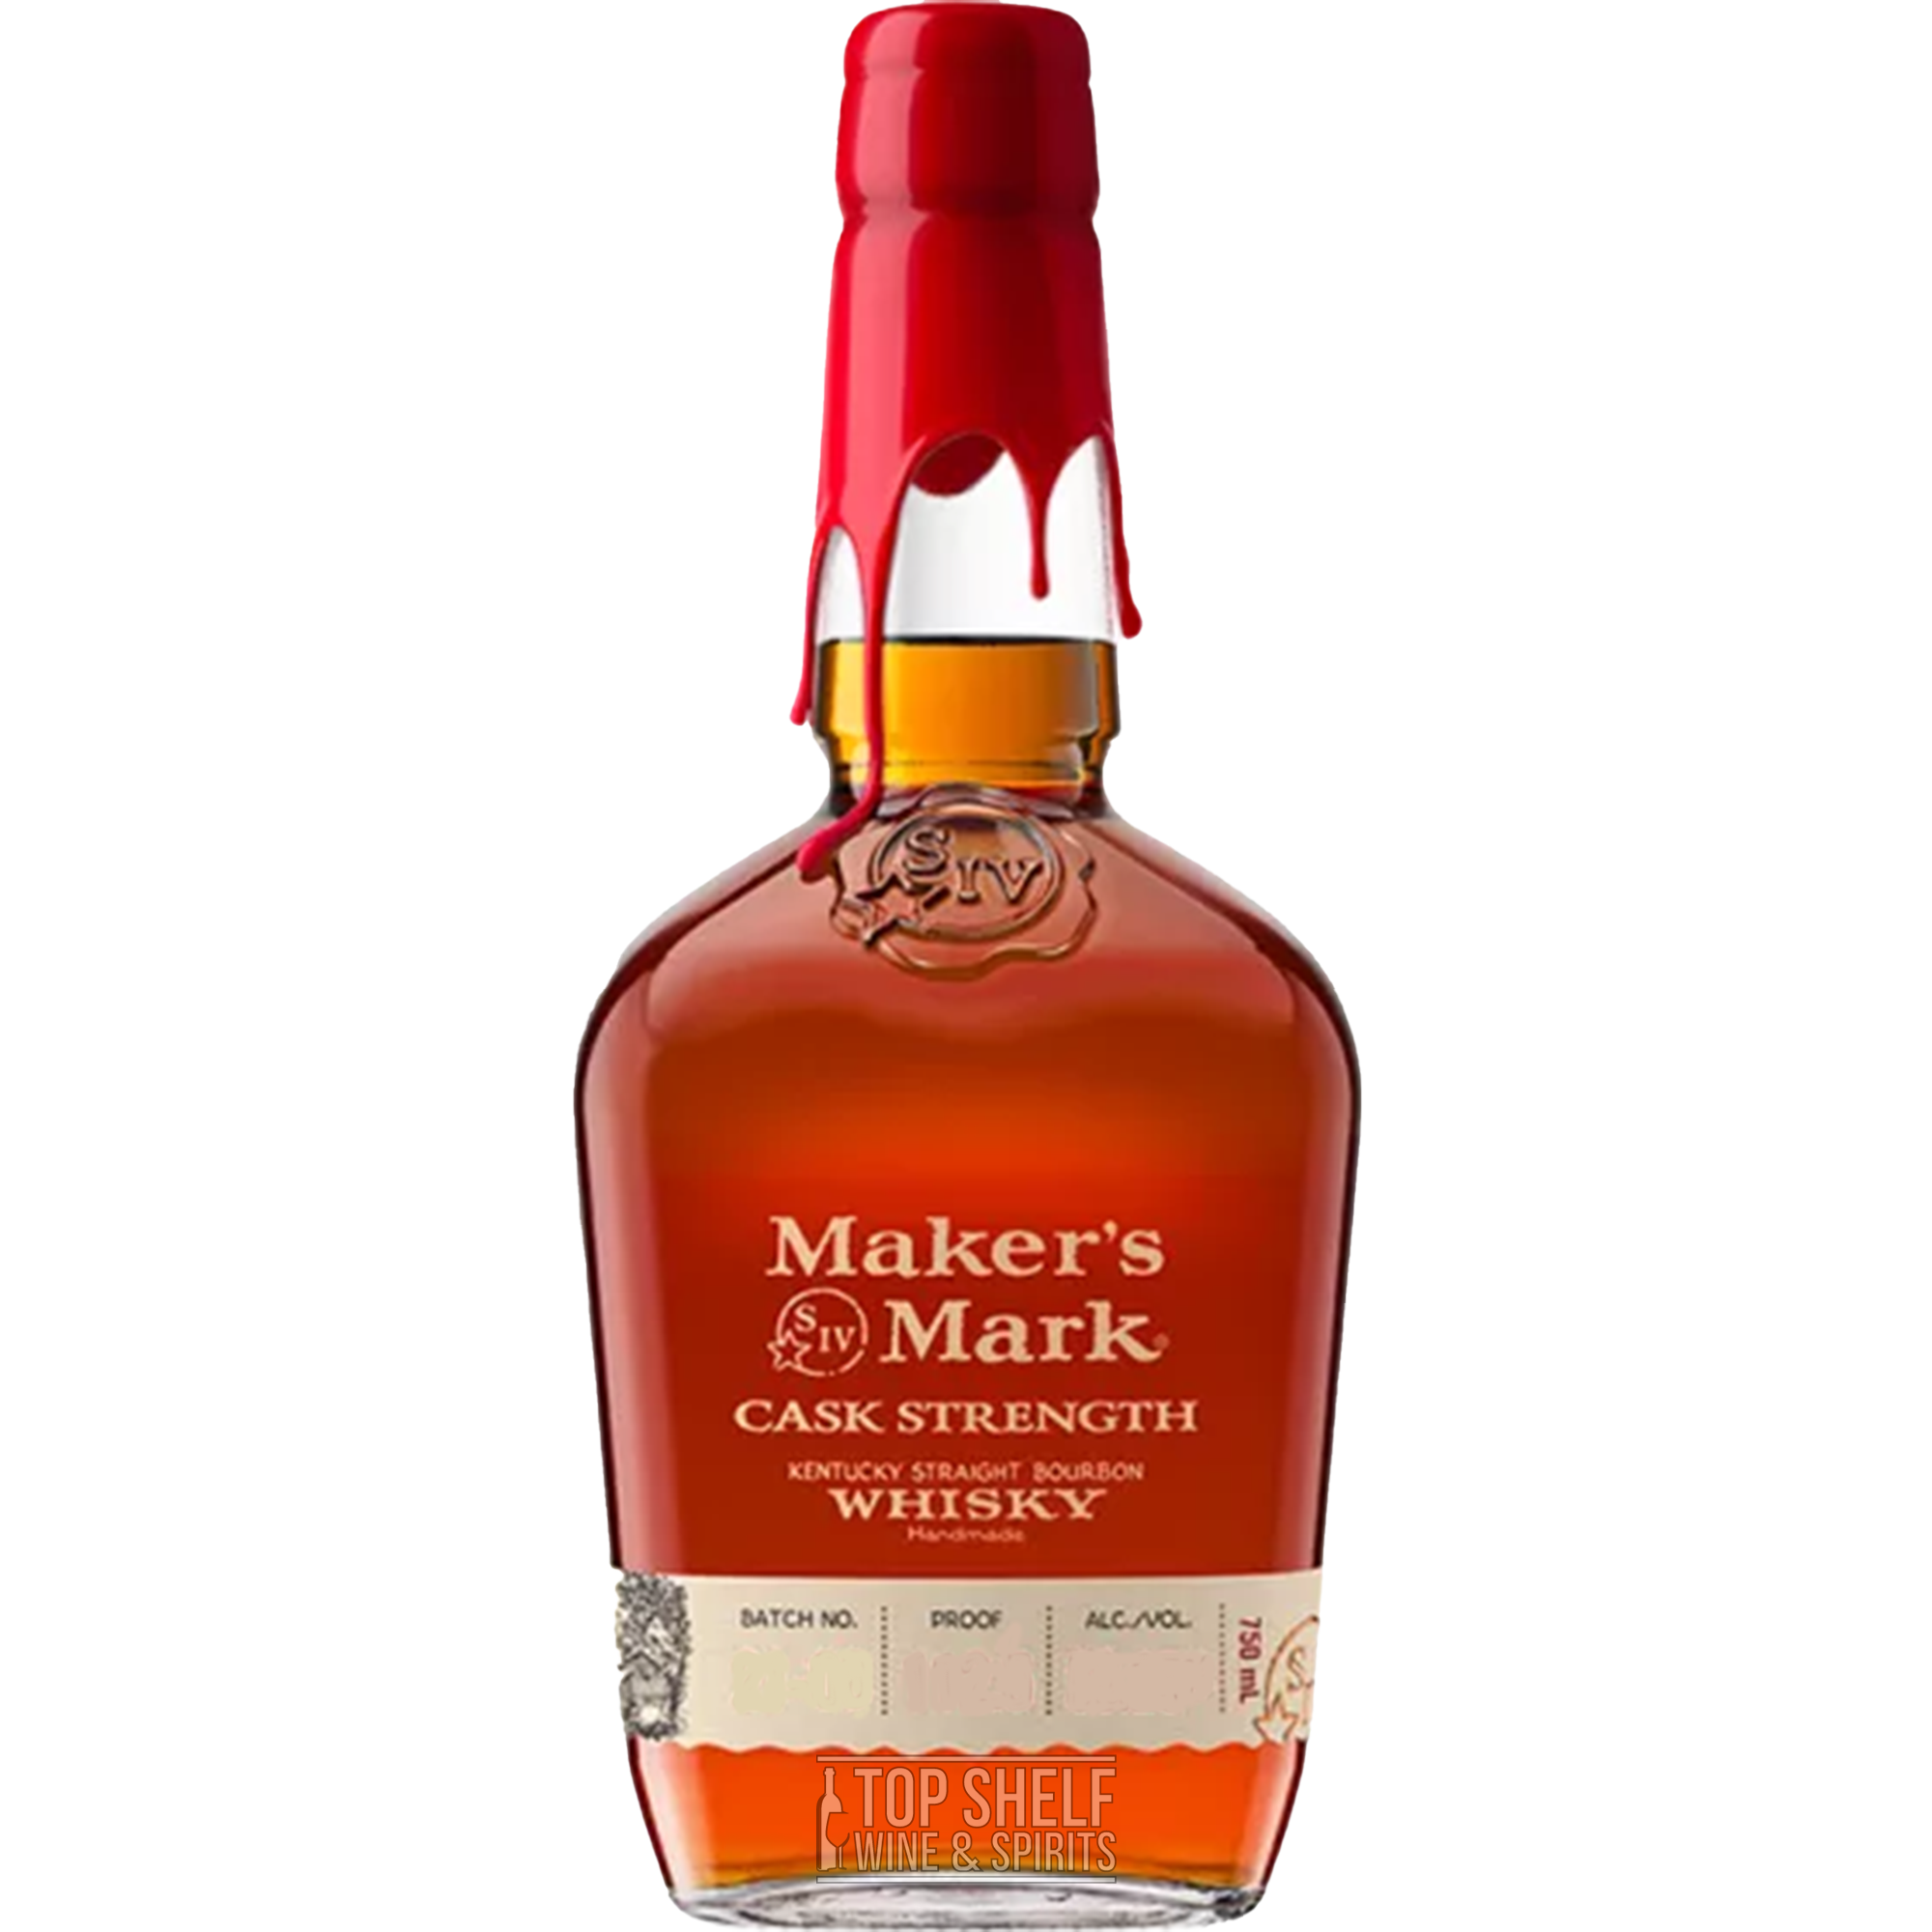 Maker's Mark 46 Cask Strength Kentucky Straight Bourbon